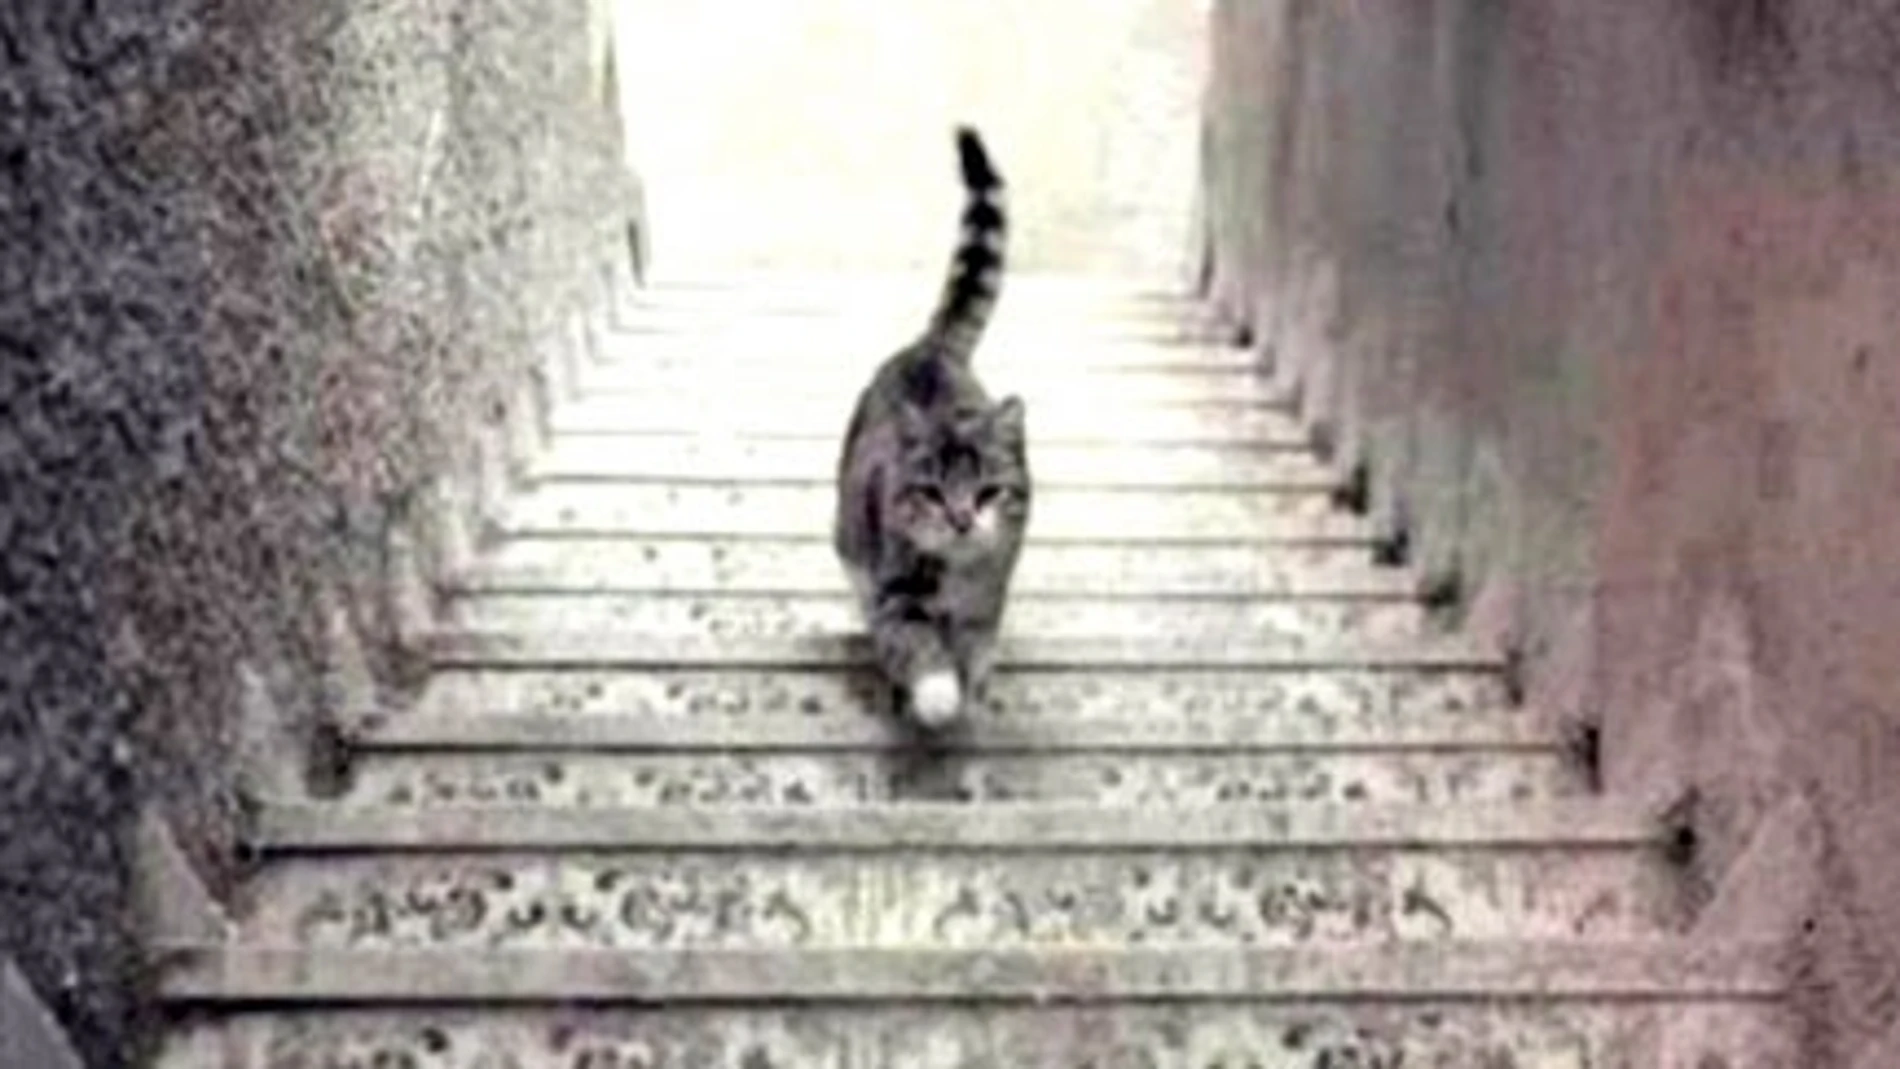 La polémica del gato: ¿Está subiendo o bajando las escaleras?